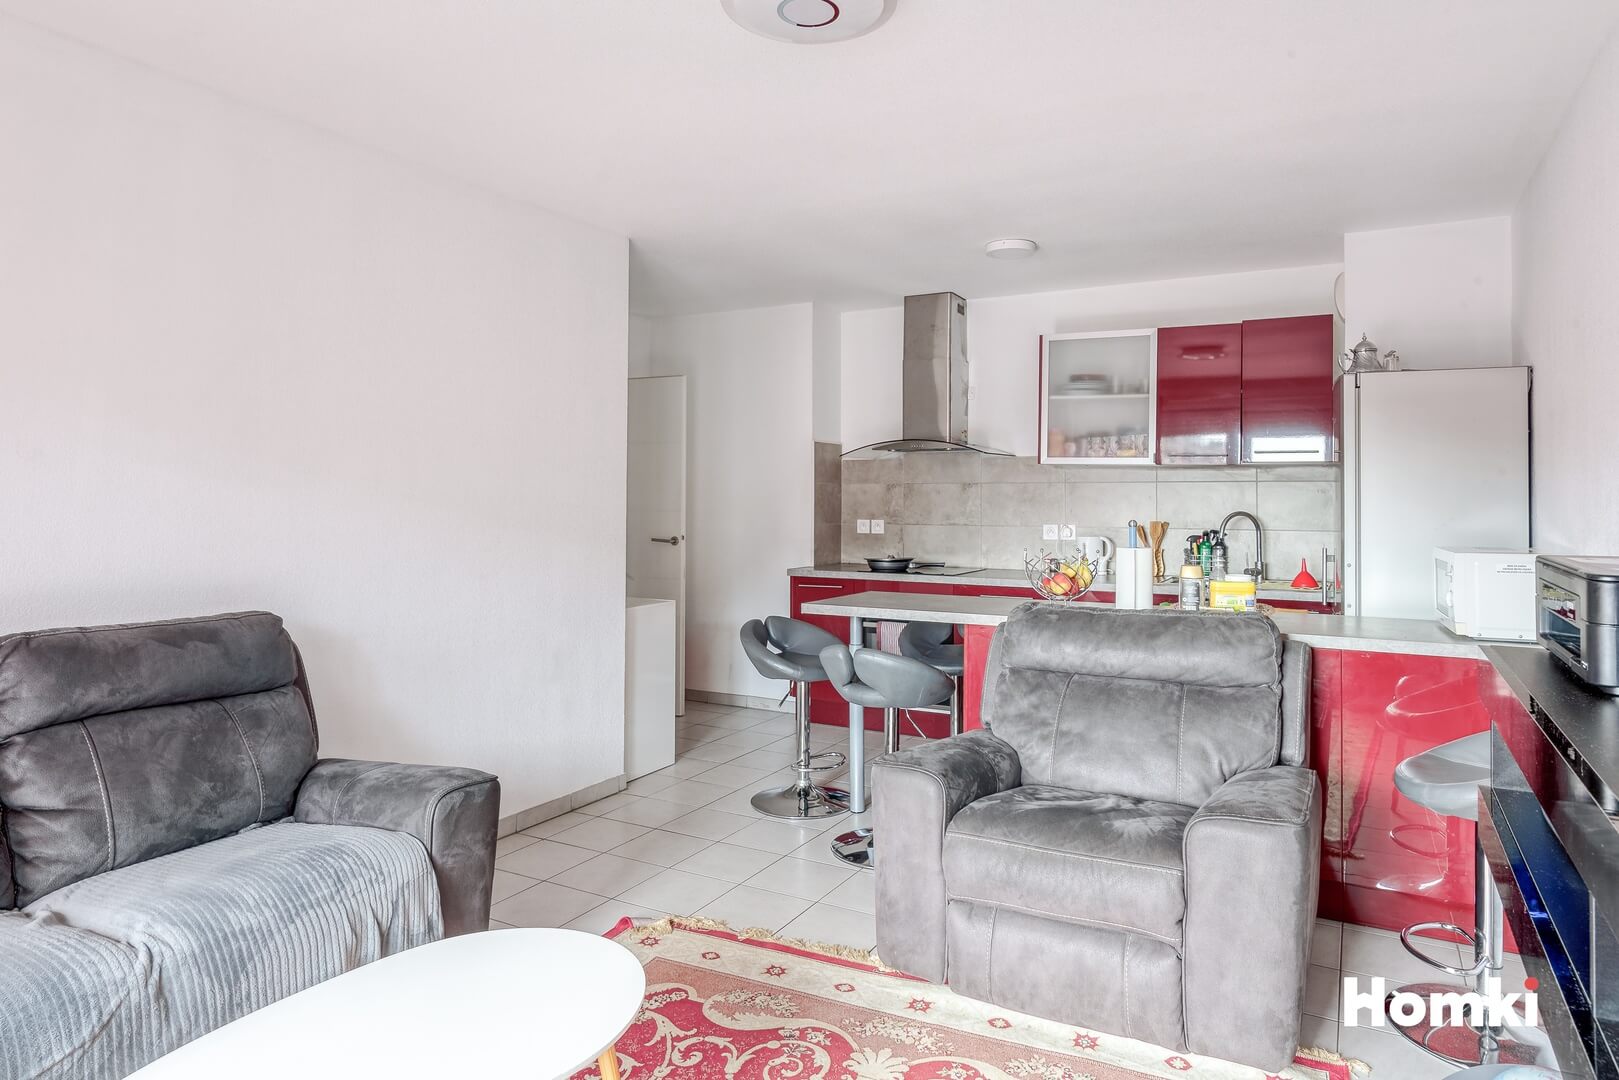 Homki - Vente Appartement  de 53.0 m² à Nice 06300